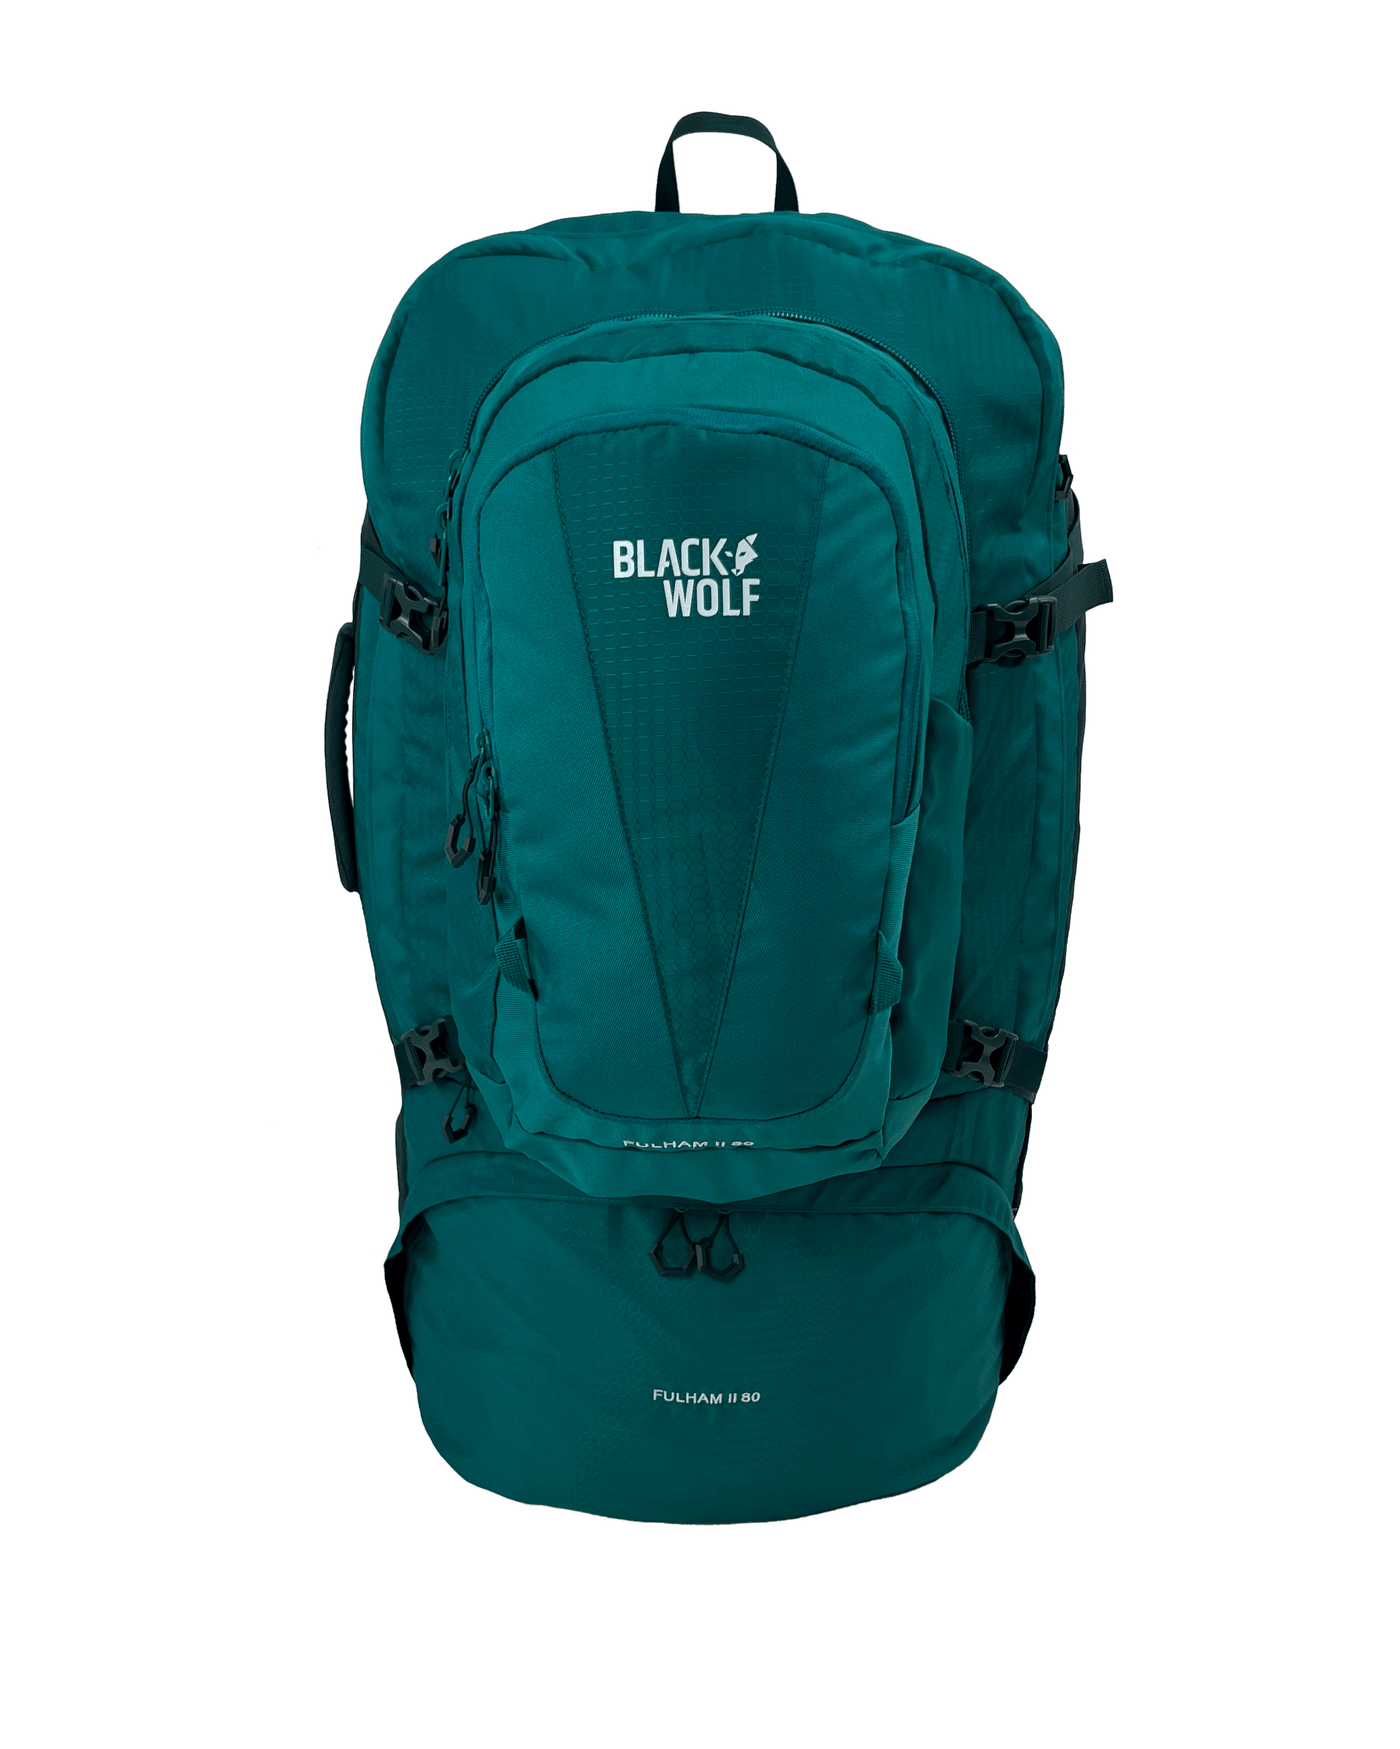 Fulham II 80 Travel Backpack